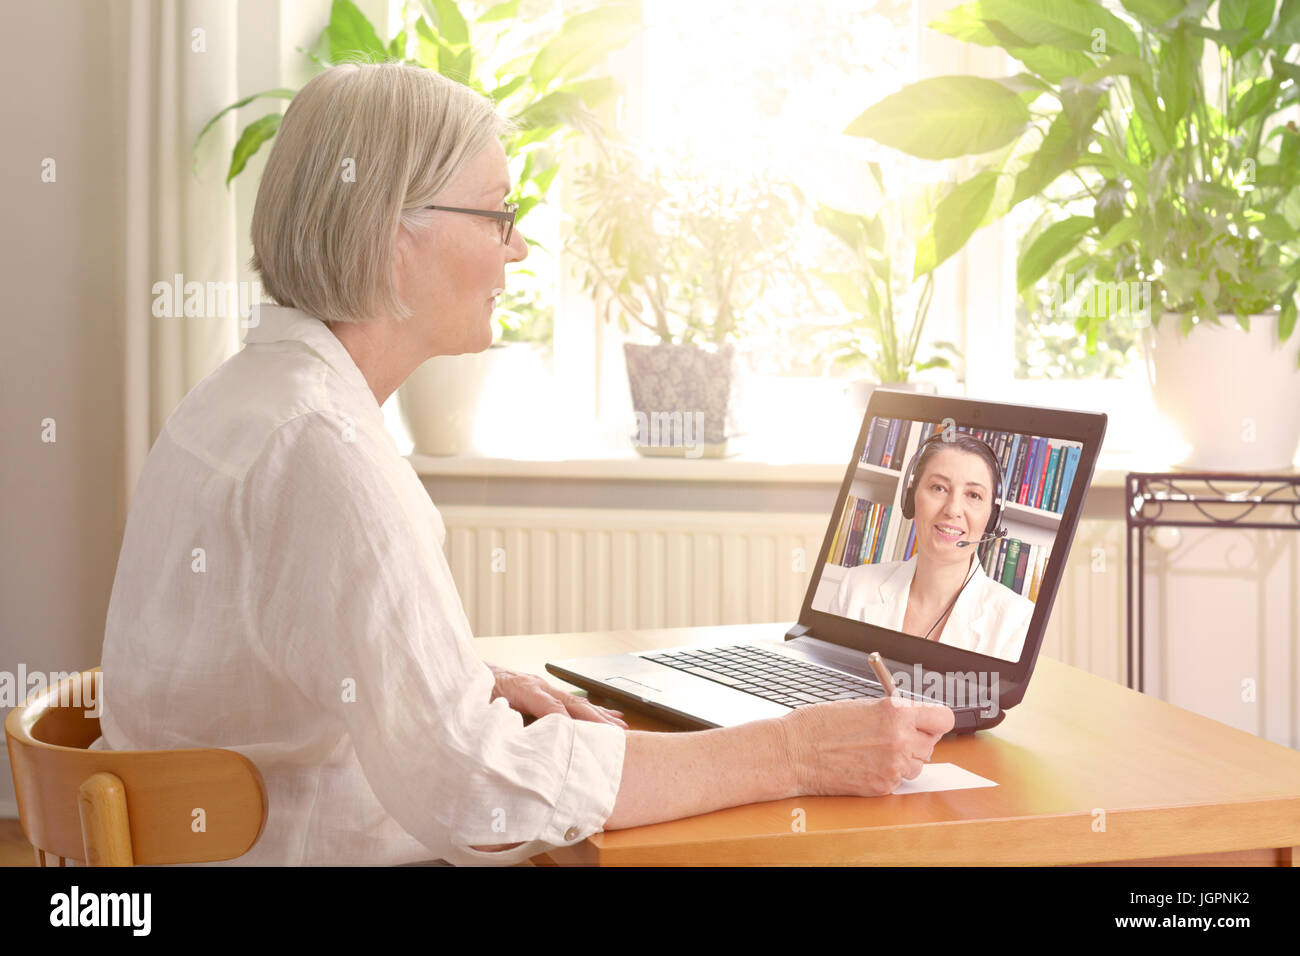 Ältere Frau in ihrem sonnigen Wohnzimmer vor einem Laptop Notizen während gerade eine Online-Beratung durch einen weiblichen Therapeuten video Stockfoto